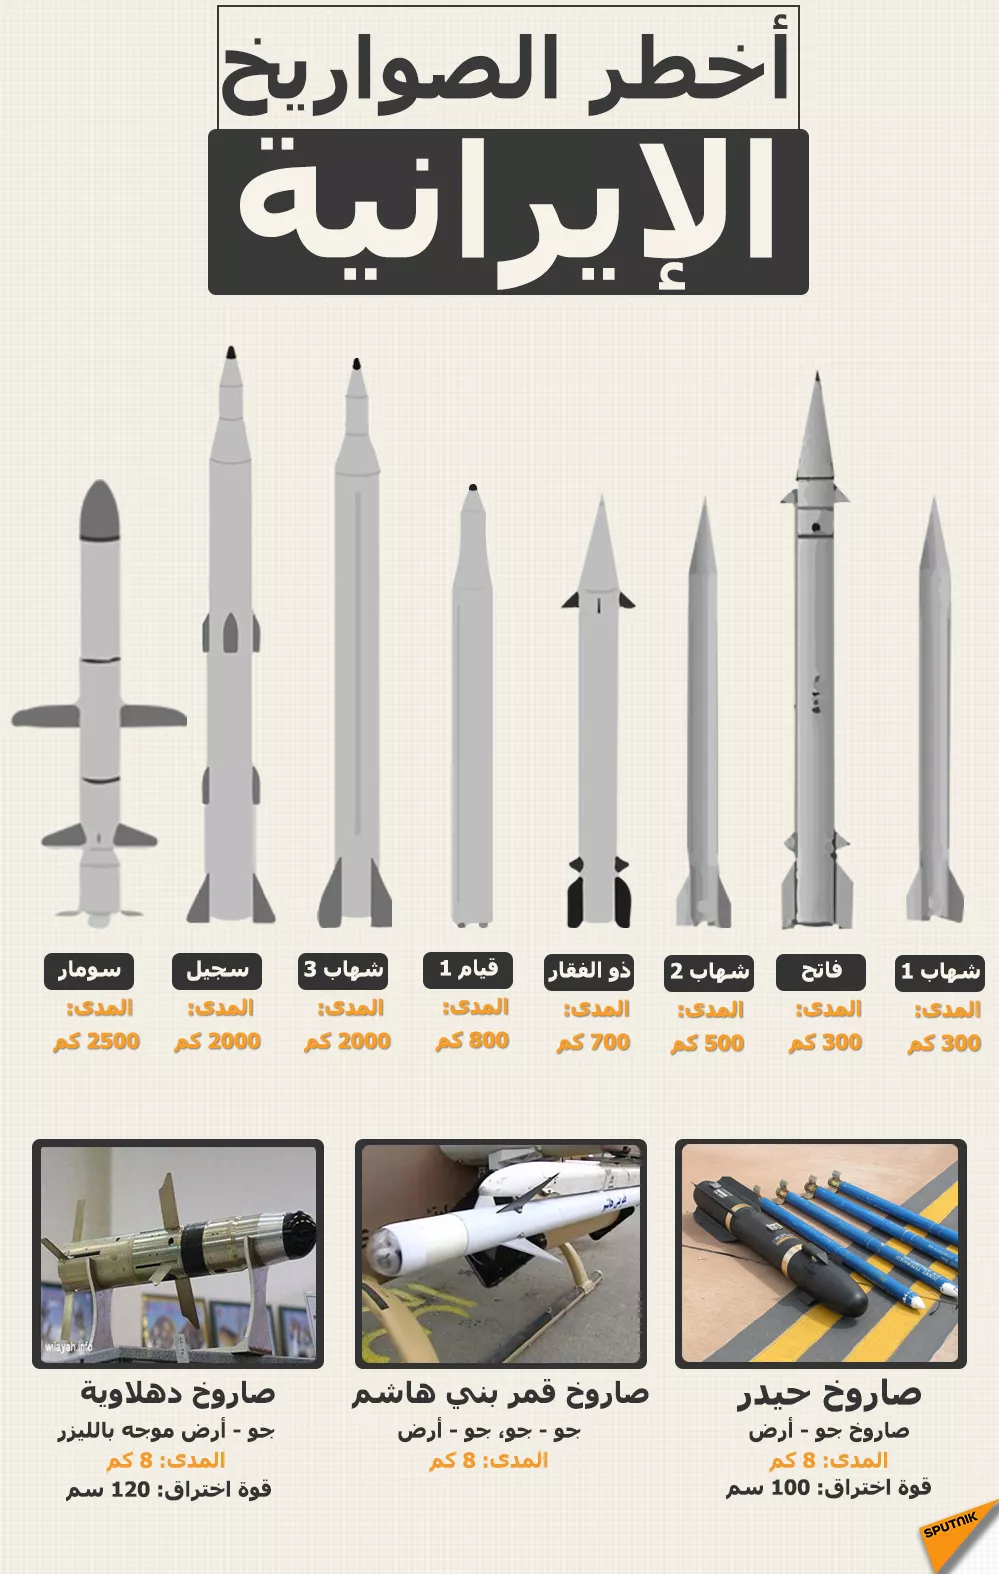 أخطر صواريخ إيرانية